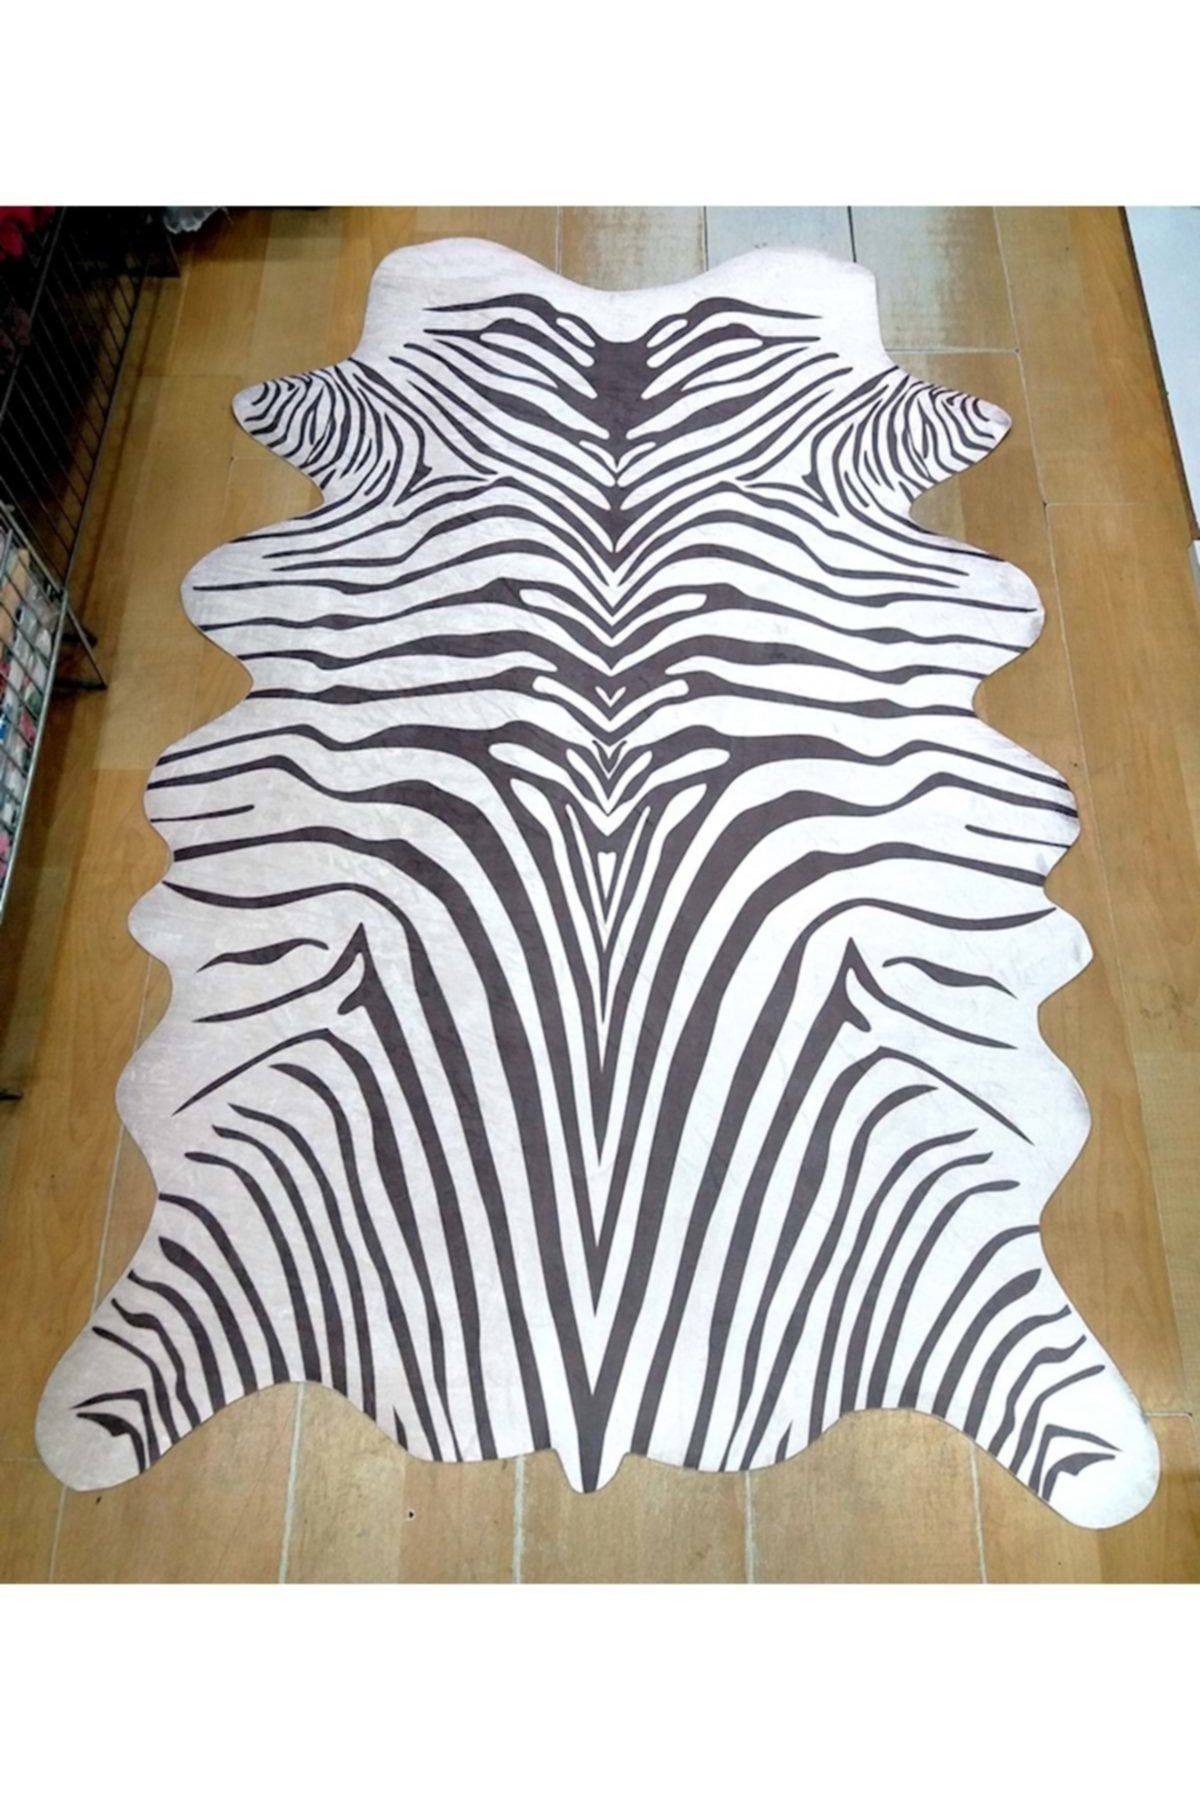 Fc Plus Acassia Home Baskılı Deri Zebra Post (100x150) Kahve/beyaz